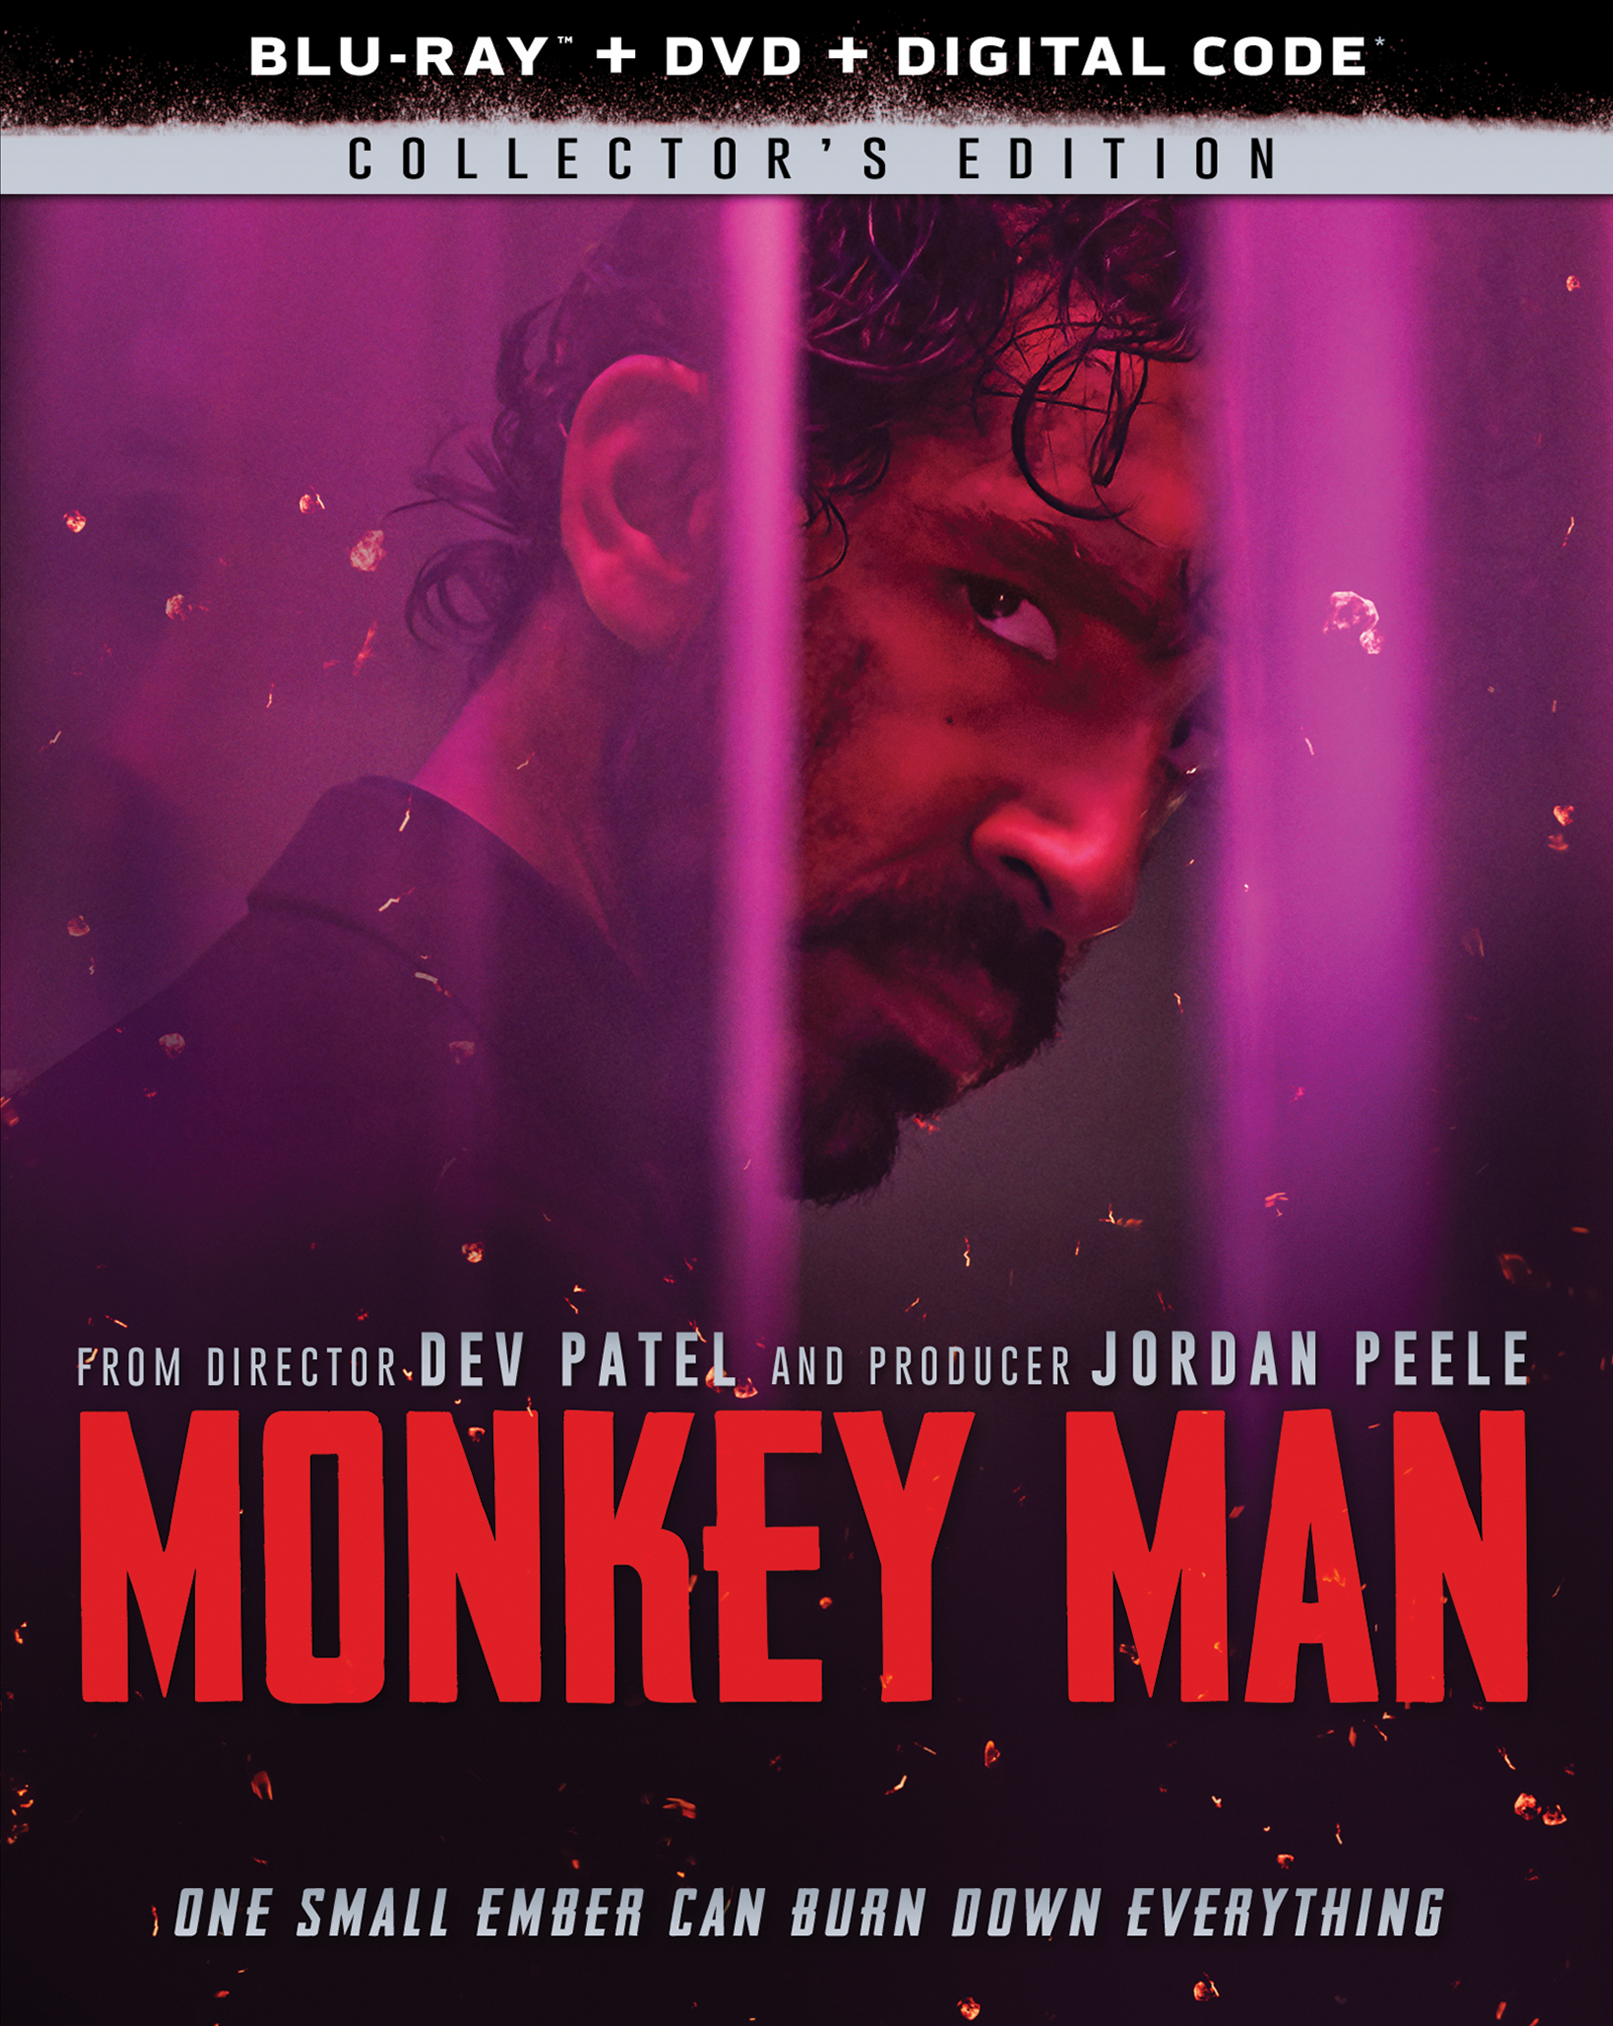 Объявлены даты выхода потокового и домашнего видео Monkey Man